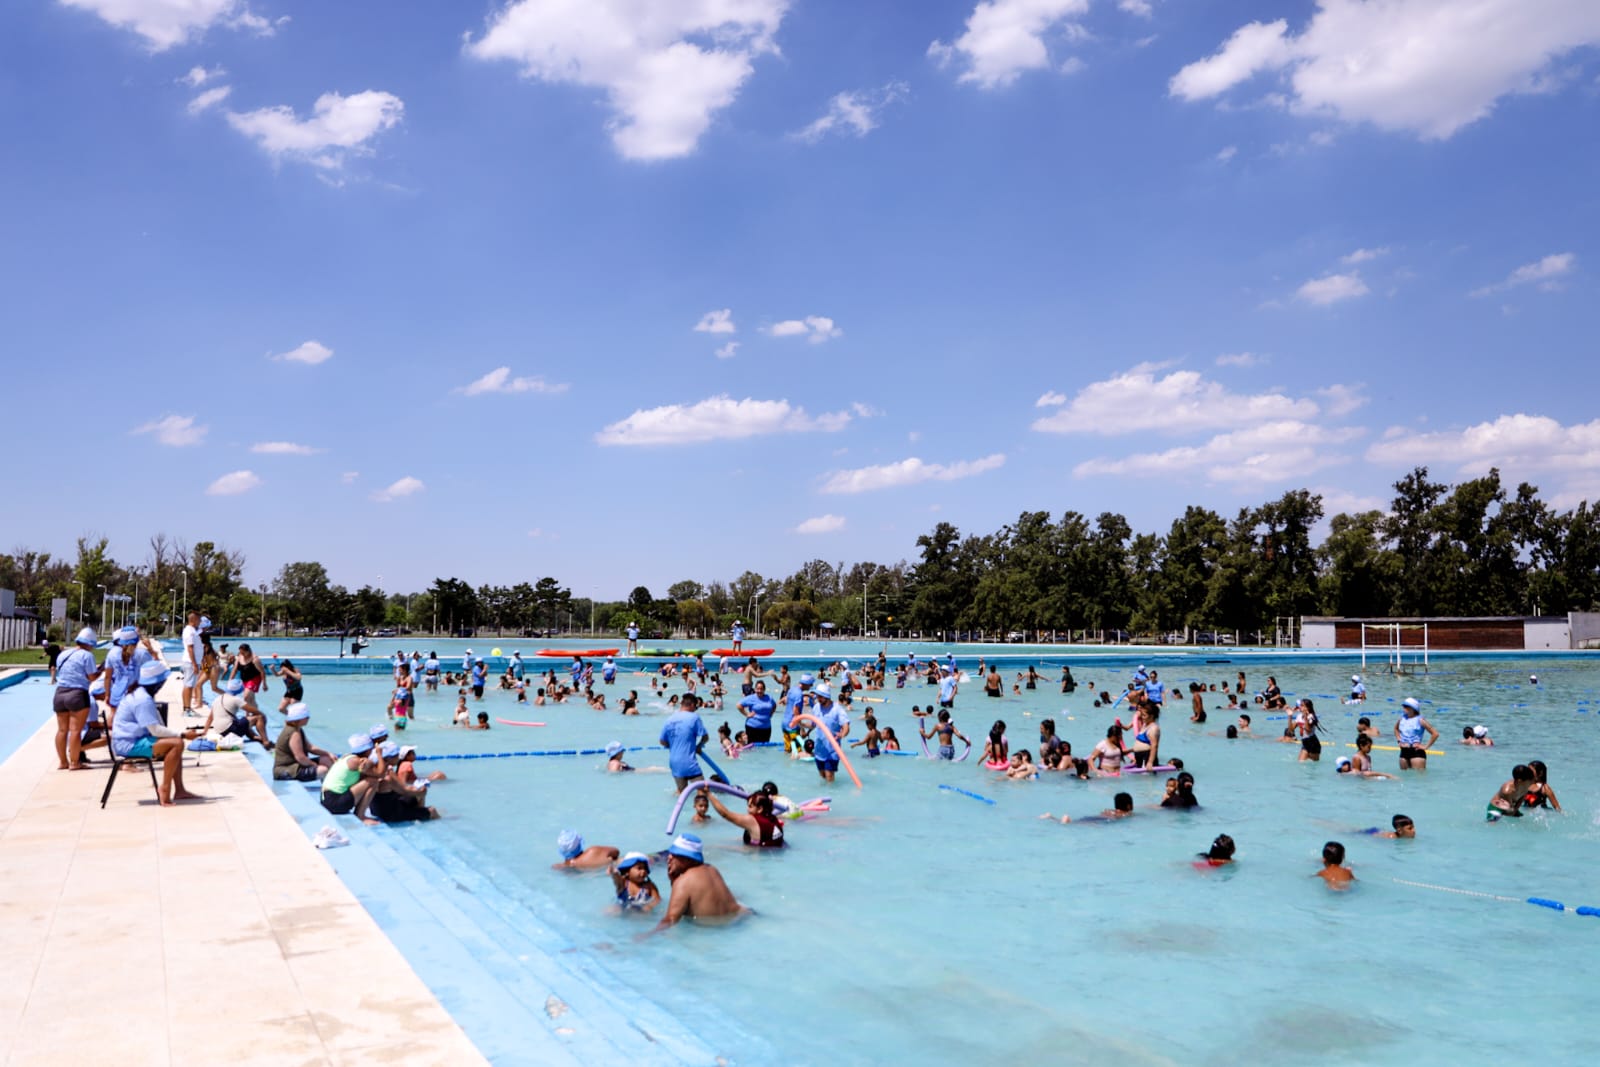 Vista de la gigantesca pileta de natación del predio de Ezeiza con niños en el agua disfrutando.